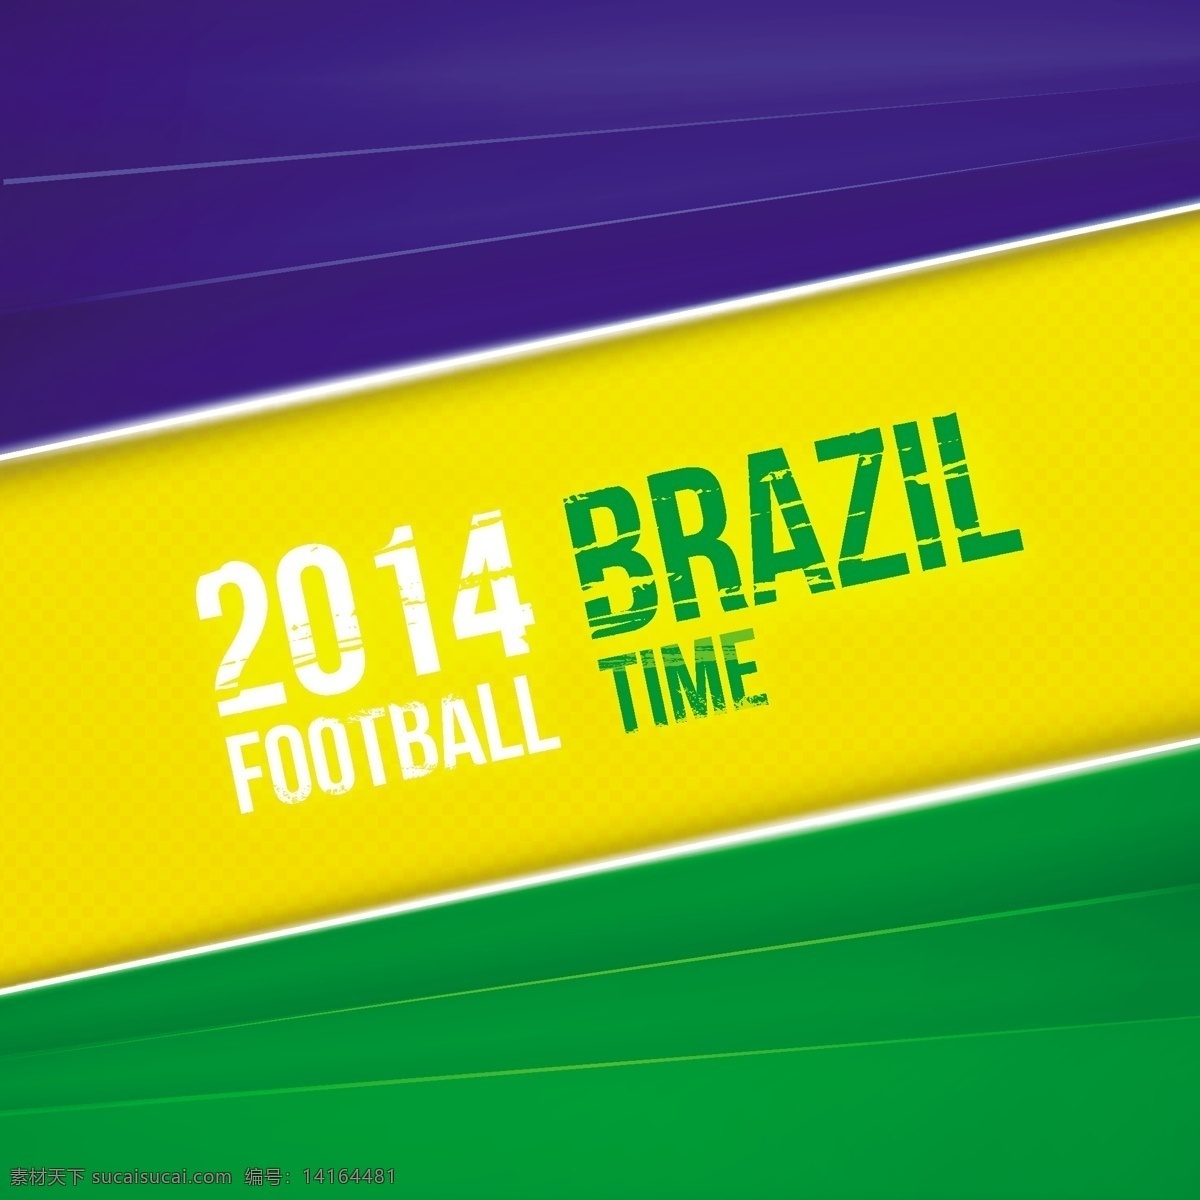 彩色 2014 巴西 世界杯 海报 模板下载 巴西世界杯 背景 足球 体育运动 生活百科 矢量素材 黄色